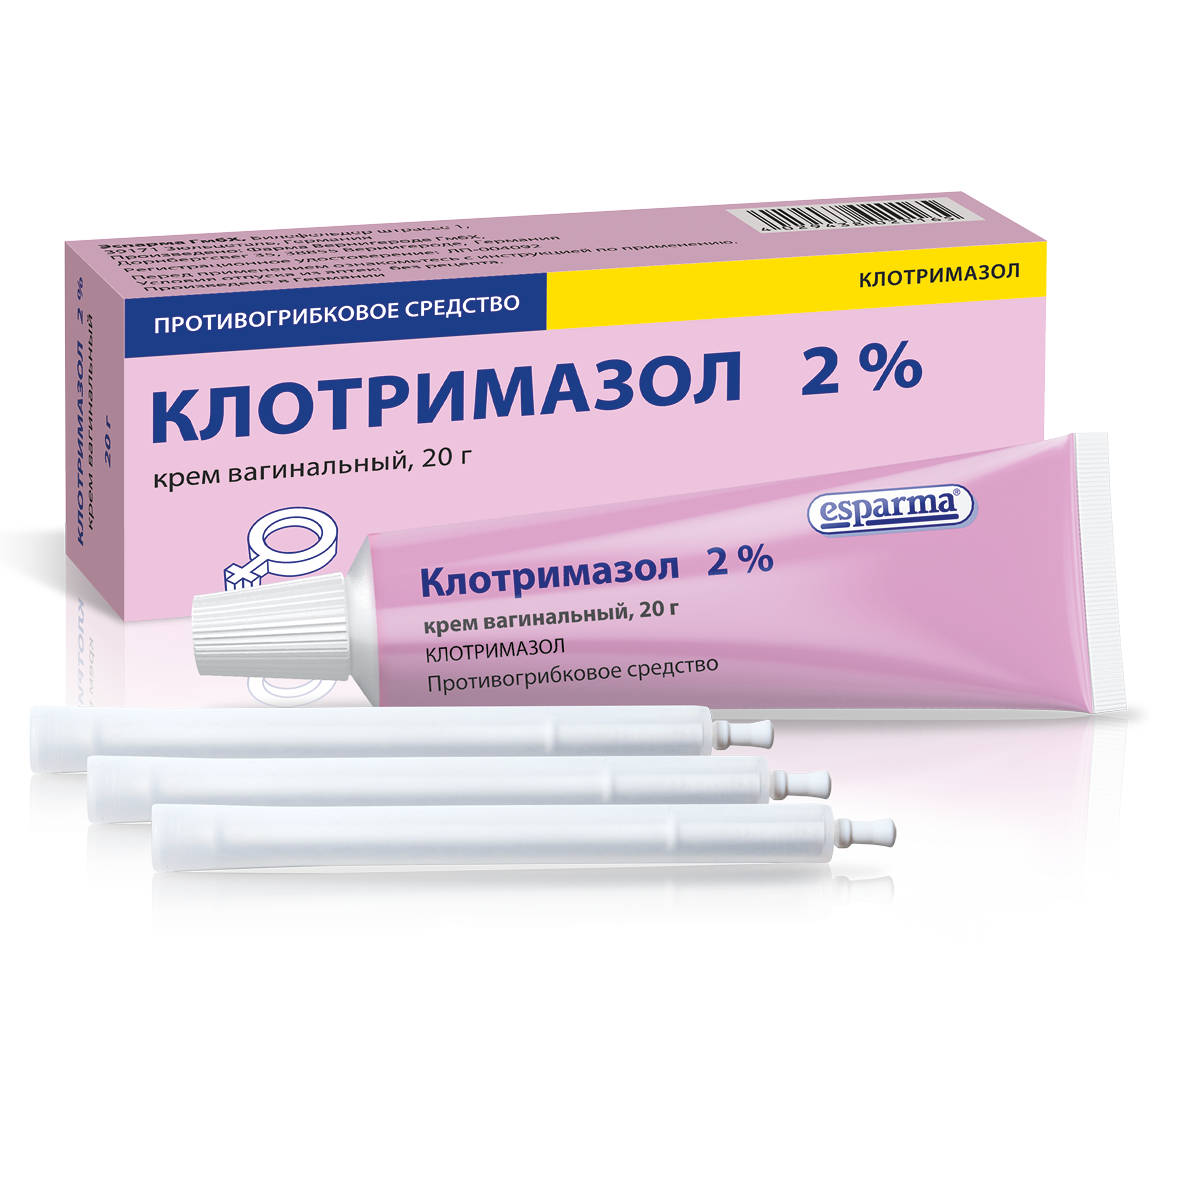 Klotrimasol_Клотримазол 2% крем для интравагинального применения